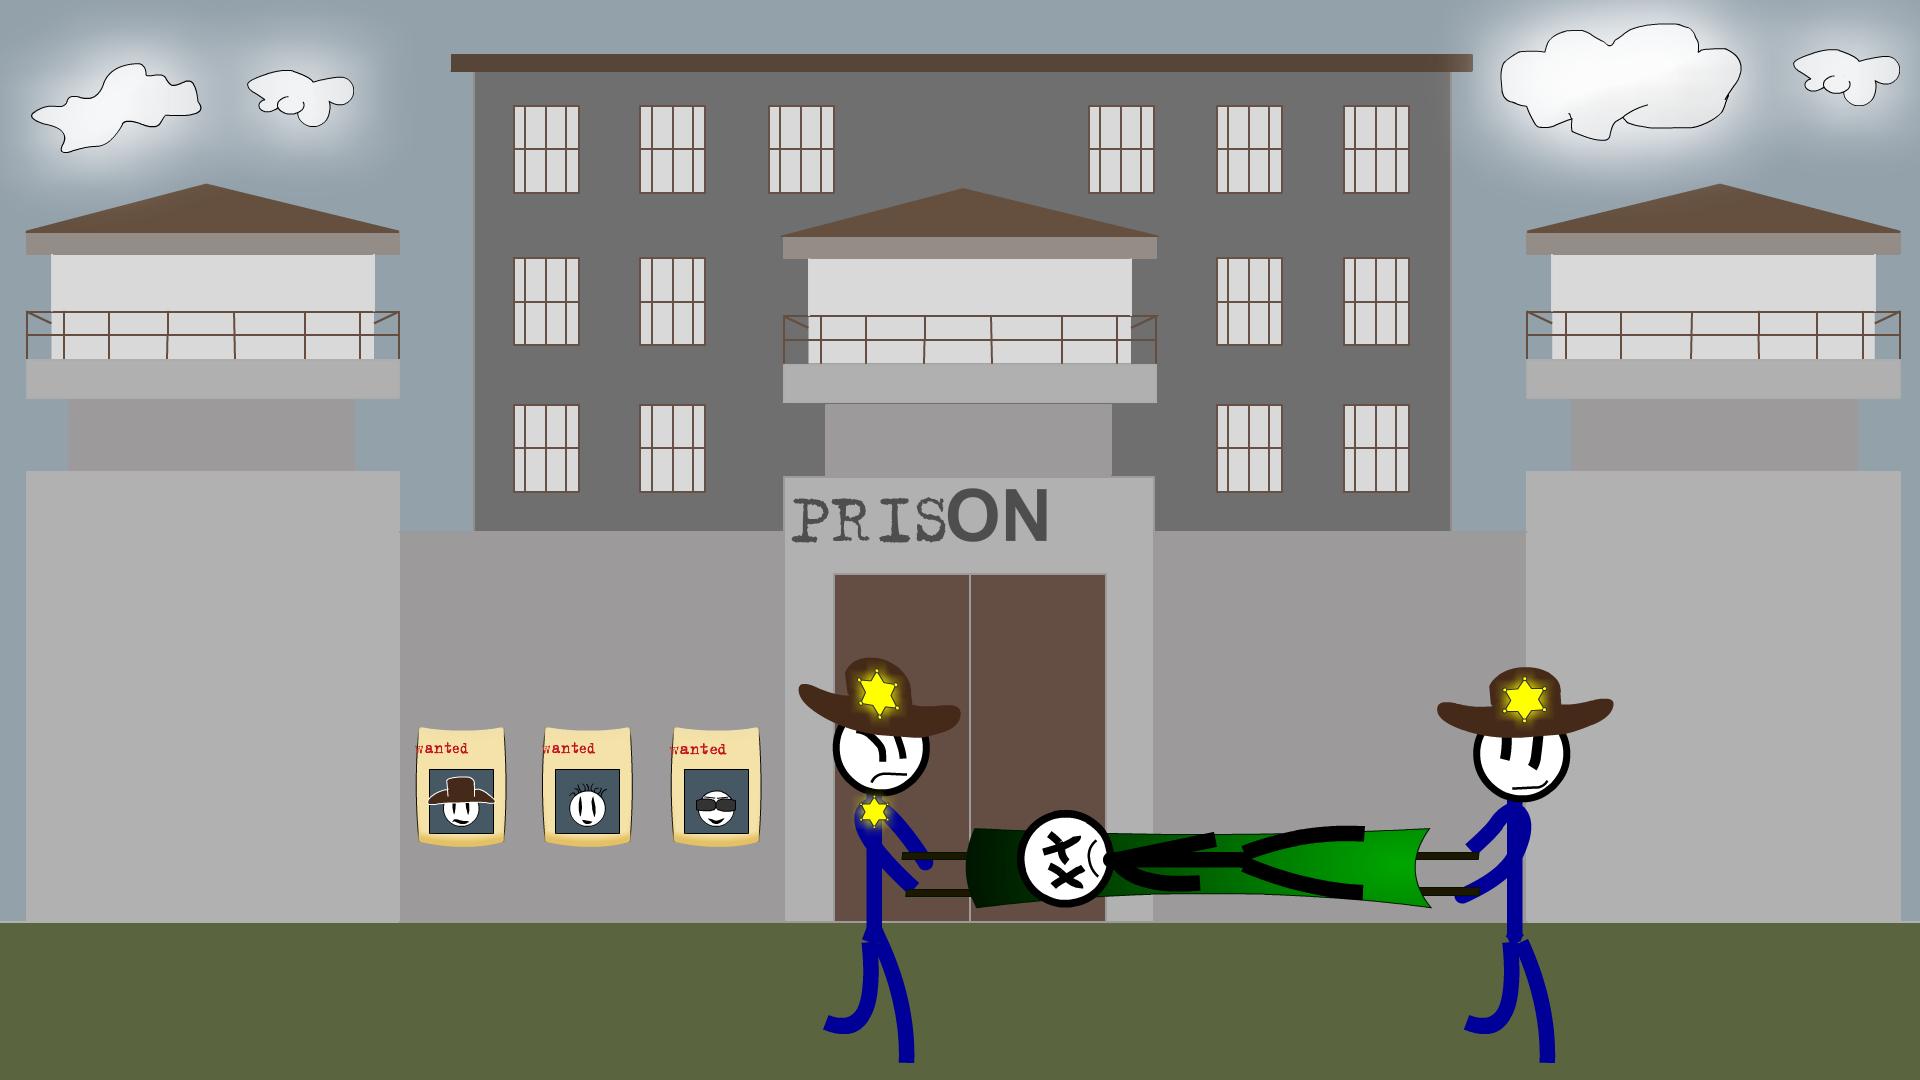 Способ сбежать. Игры Стикмен побег из тюрьмы 4. Игра Stickman побег из тюрьмы. Стикмен бежит из тюрьмы.